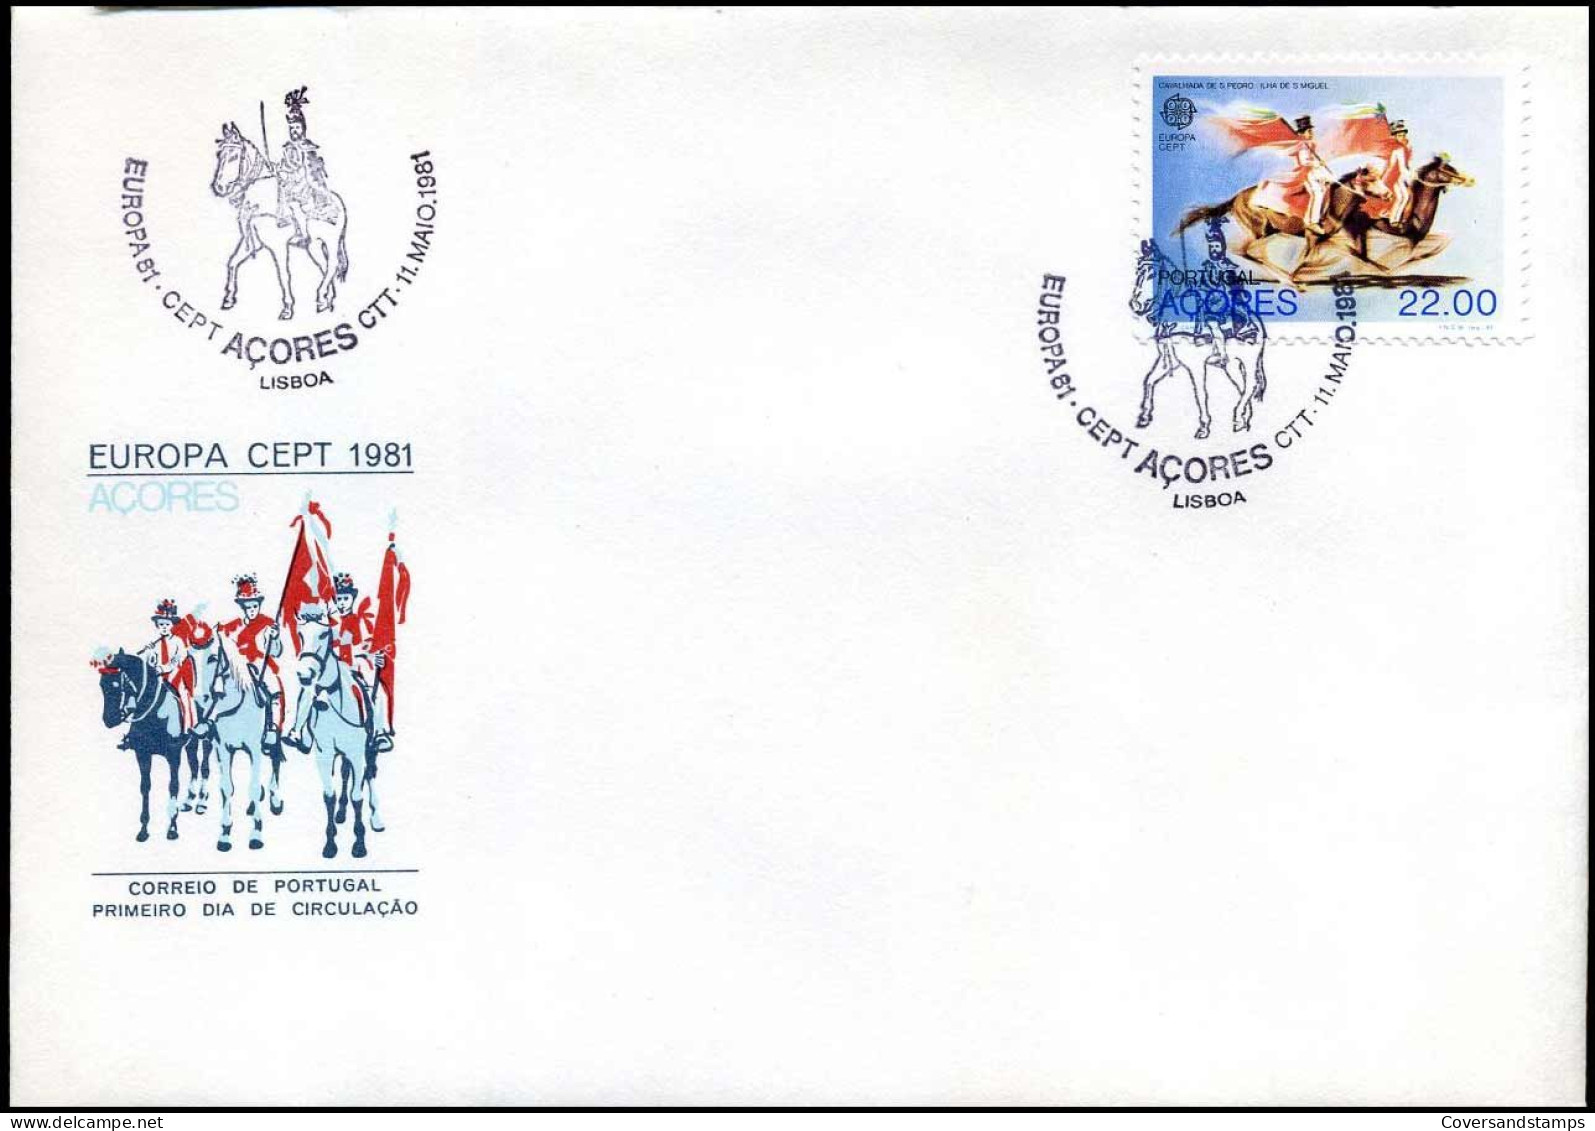 FDC - Portugal Azores - Europa CEPT 1981 - 1981